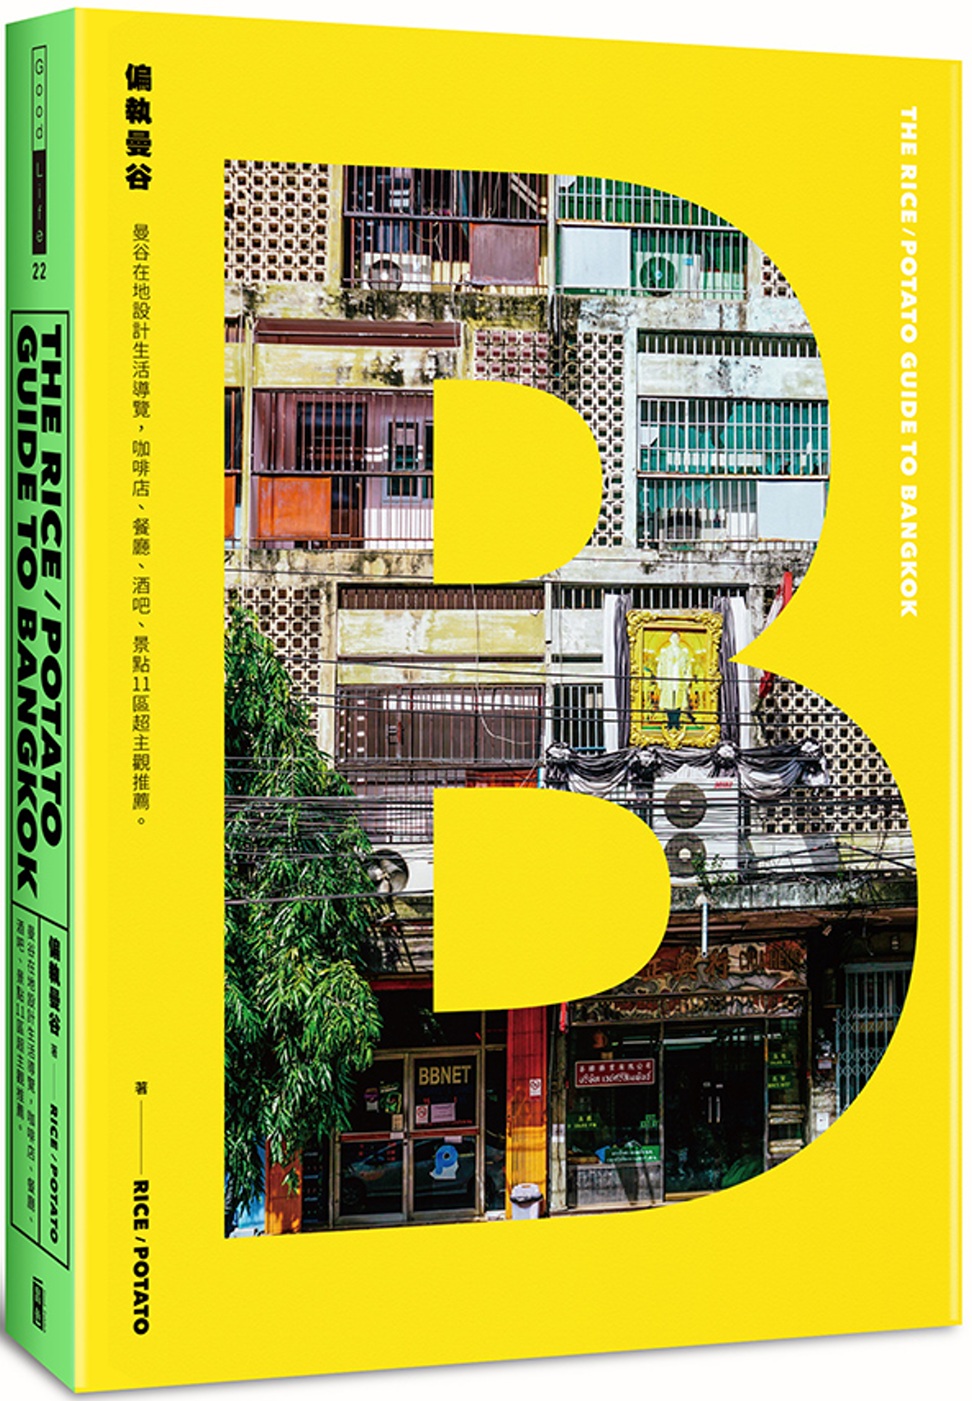 偏執曼谷 The rice/potato guide to Bangkok：曼谷在地設計生活導覽，咖啡店、餐廳、酒吧、景點11區超主觀推薦。